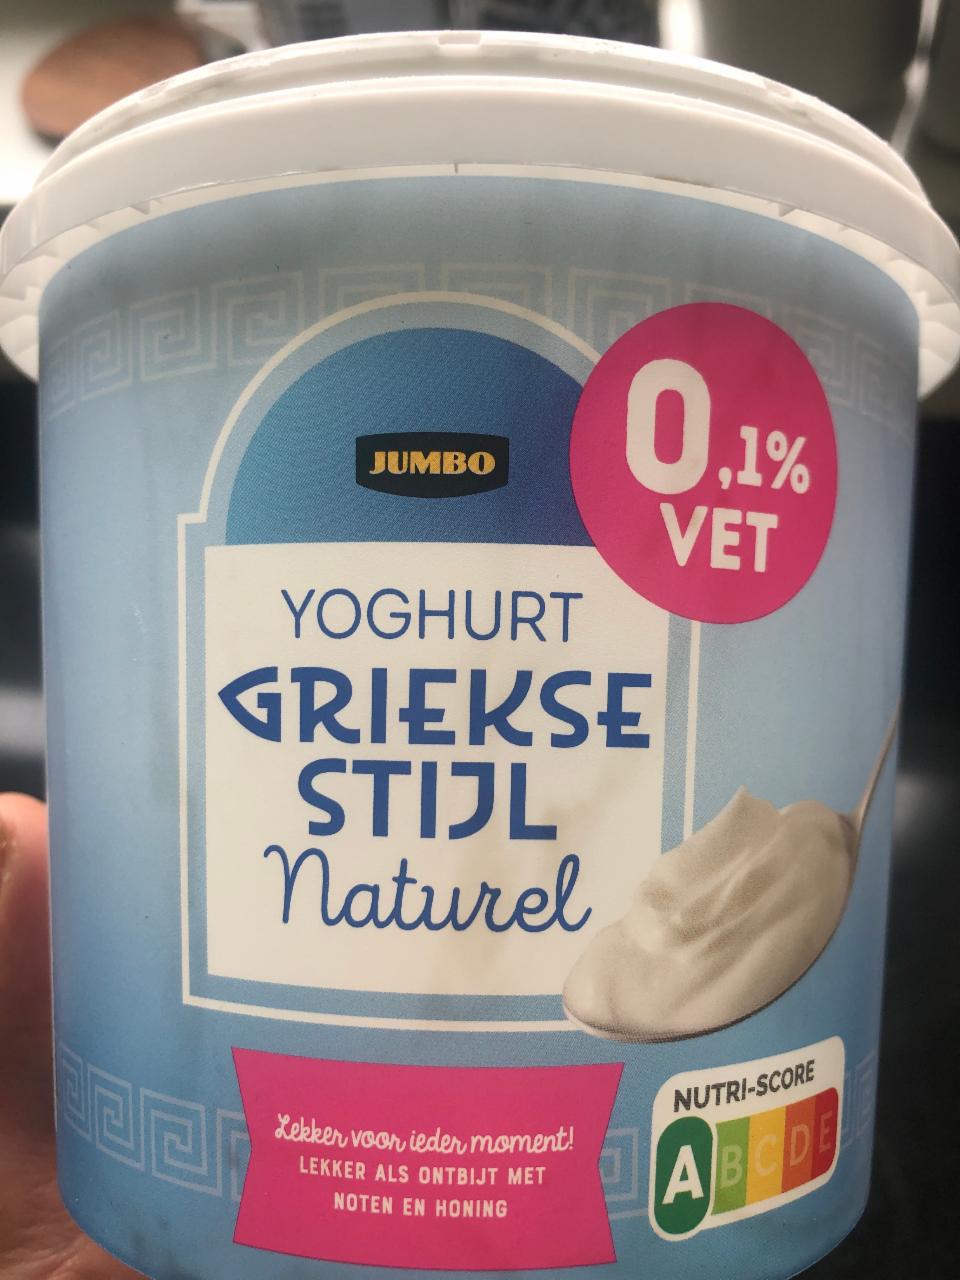 Fotografie - Yoghurt griekse stijl naturel 0,1% vet Jumbo